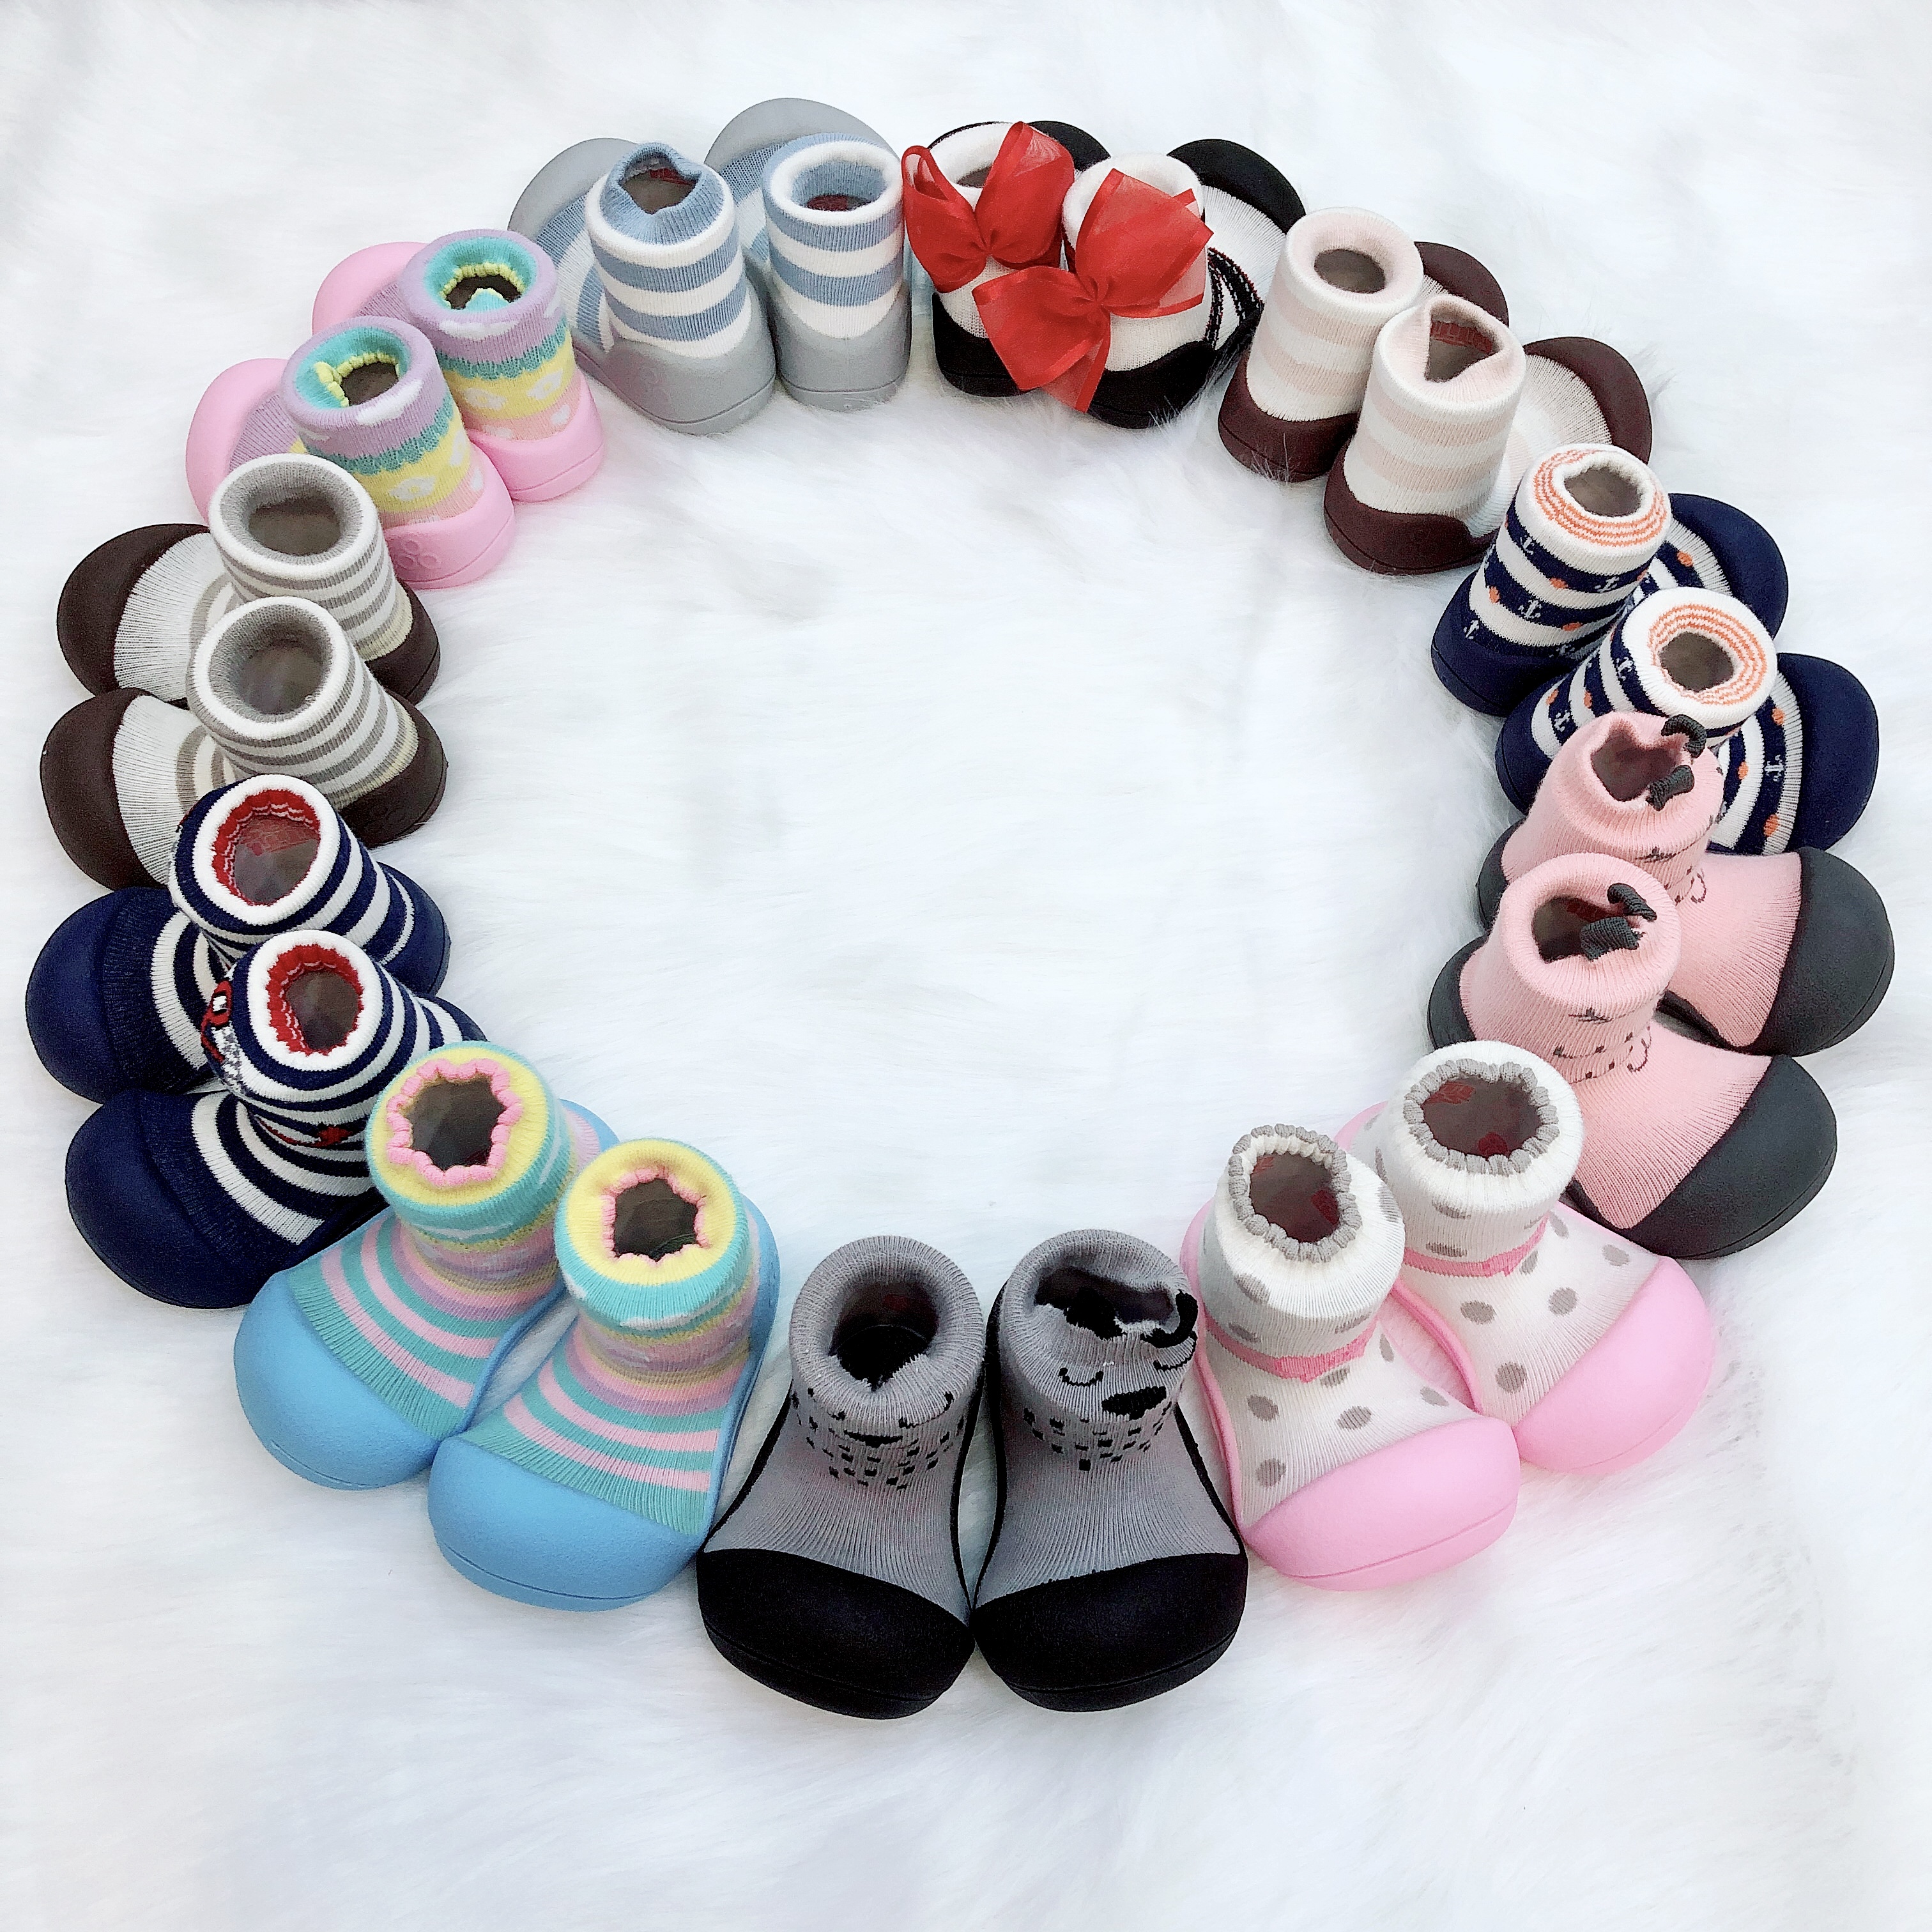 Giày Hàn Quốc Attipas cho bé trai bé gái từ 1-2 tuổi, hỗ trợ tập đi